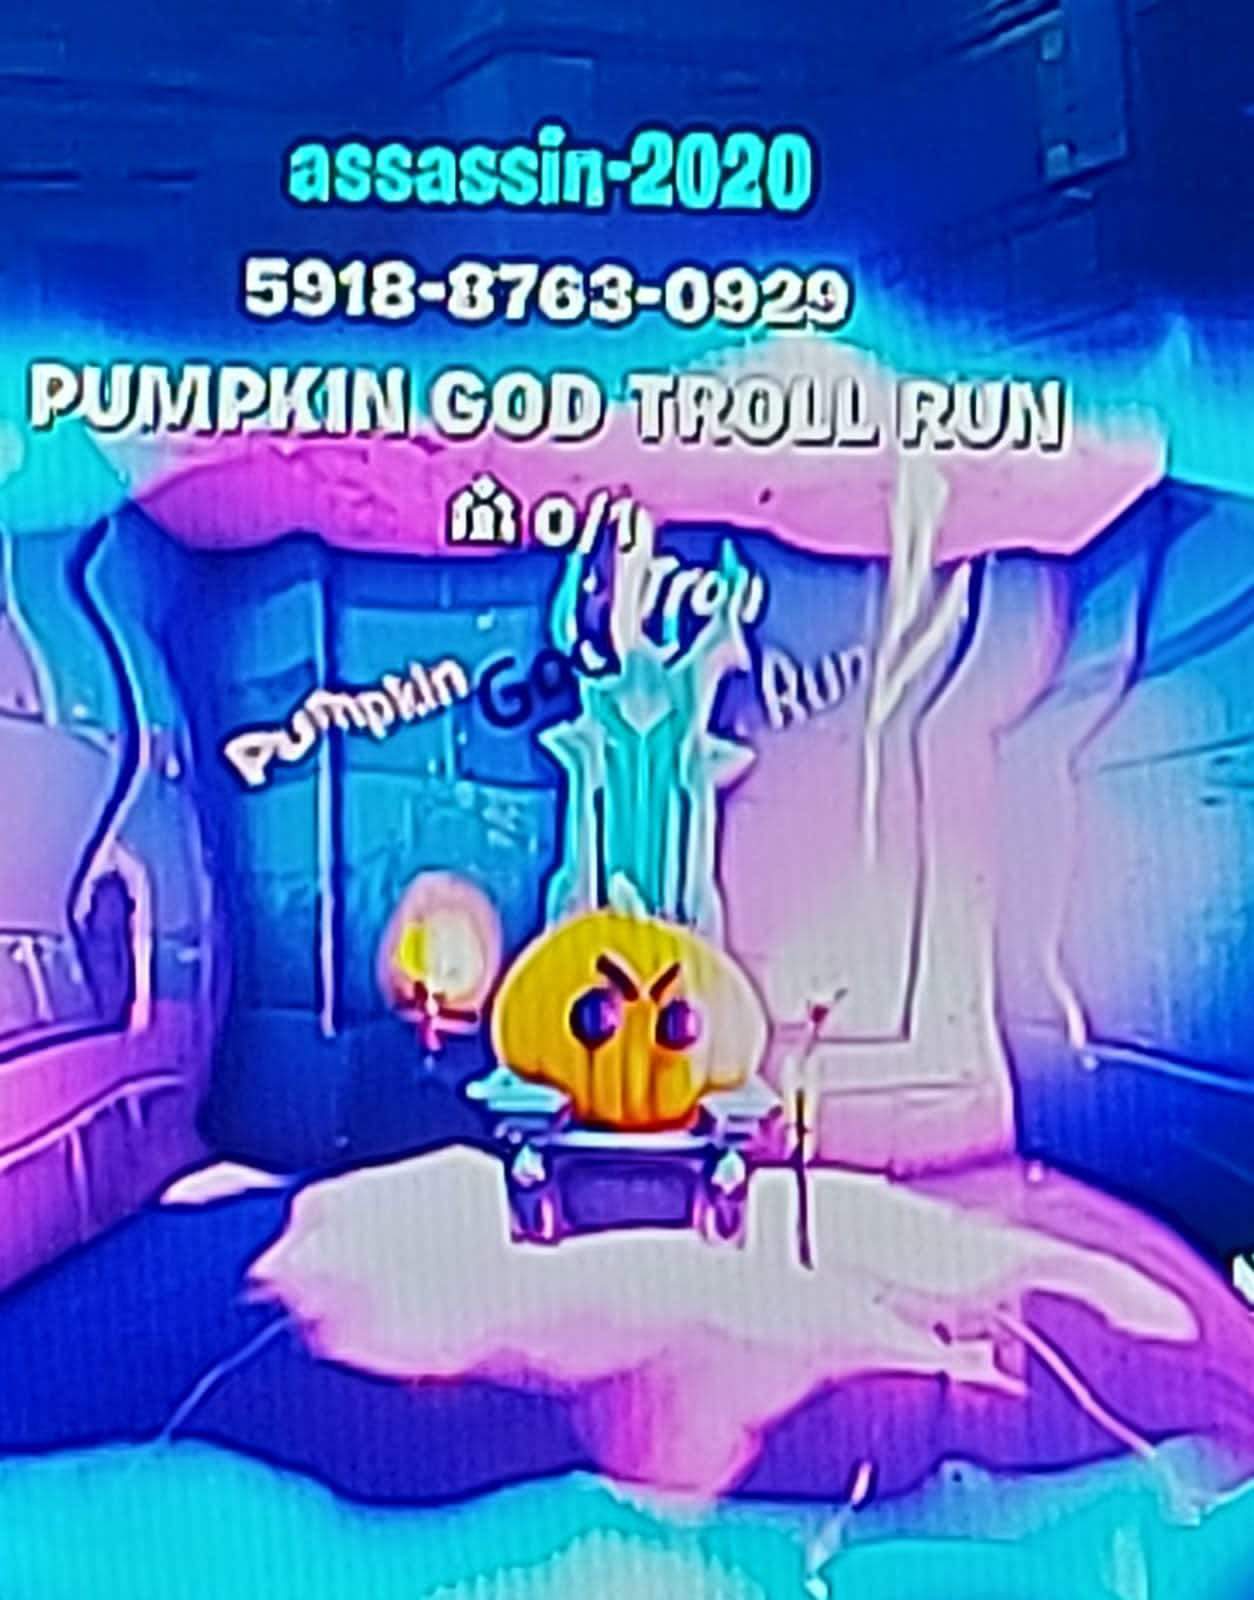 Pumpkin God troll run